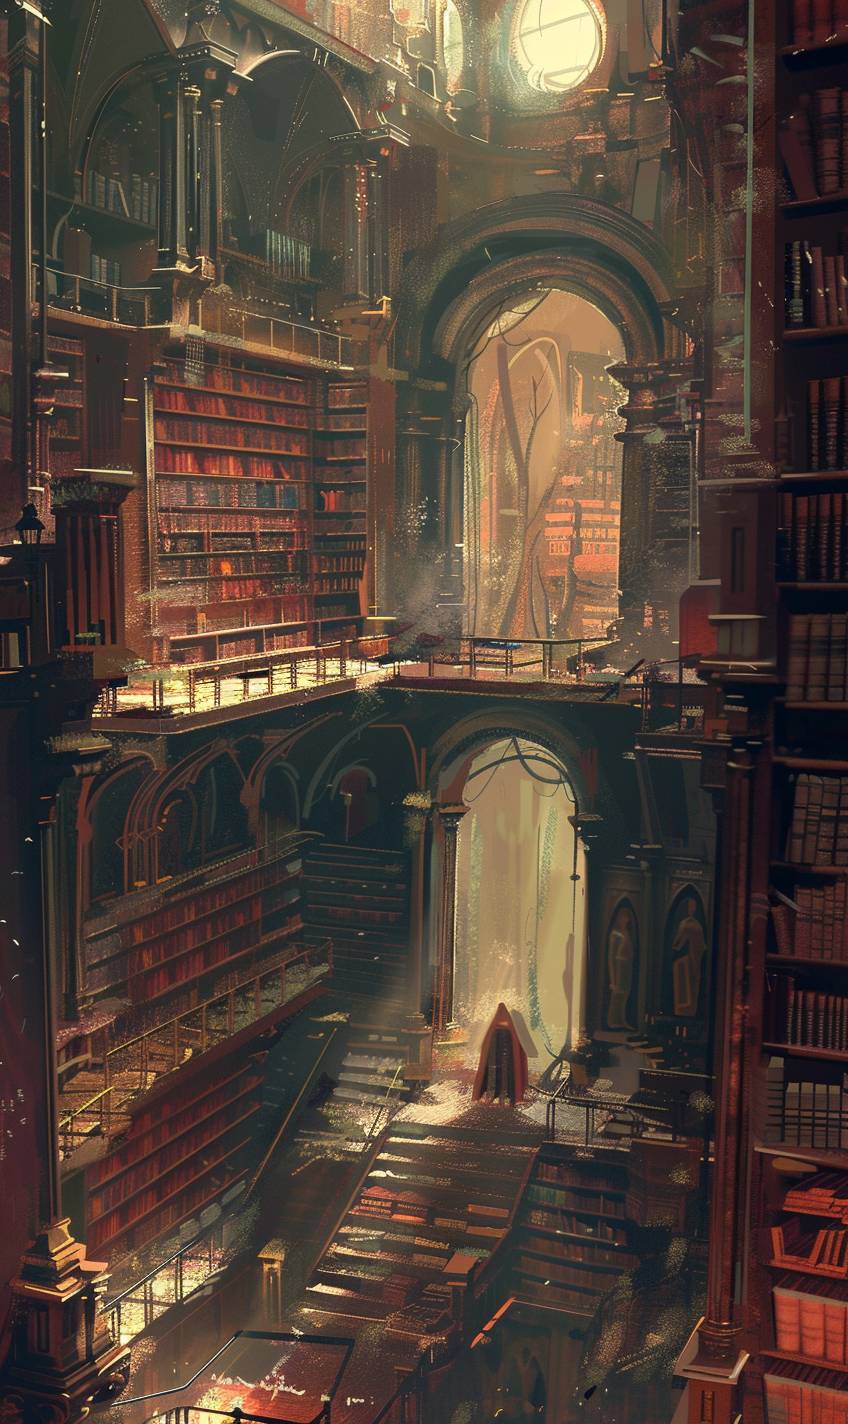 Sparthのスタイルのように、古代の書籍でいっぱいの魔法の図書館